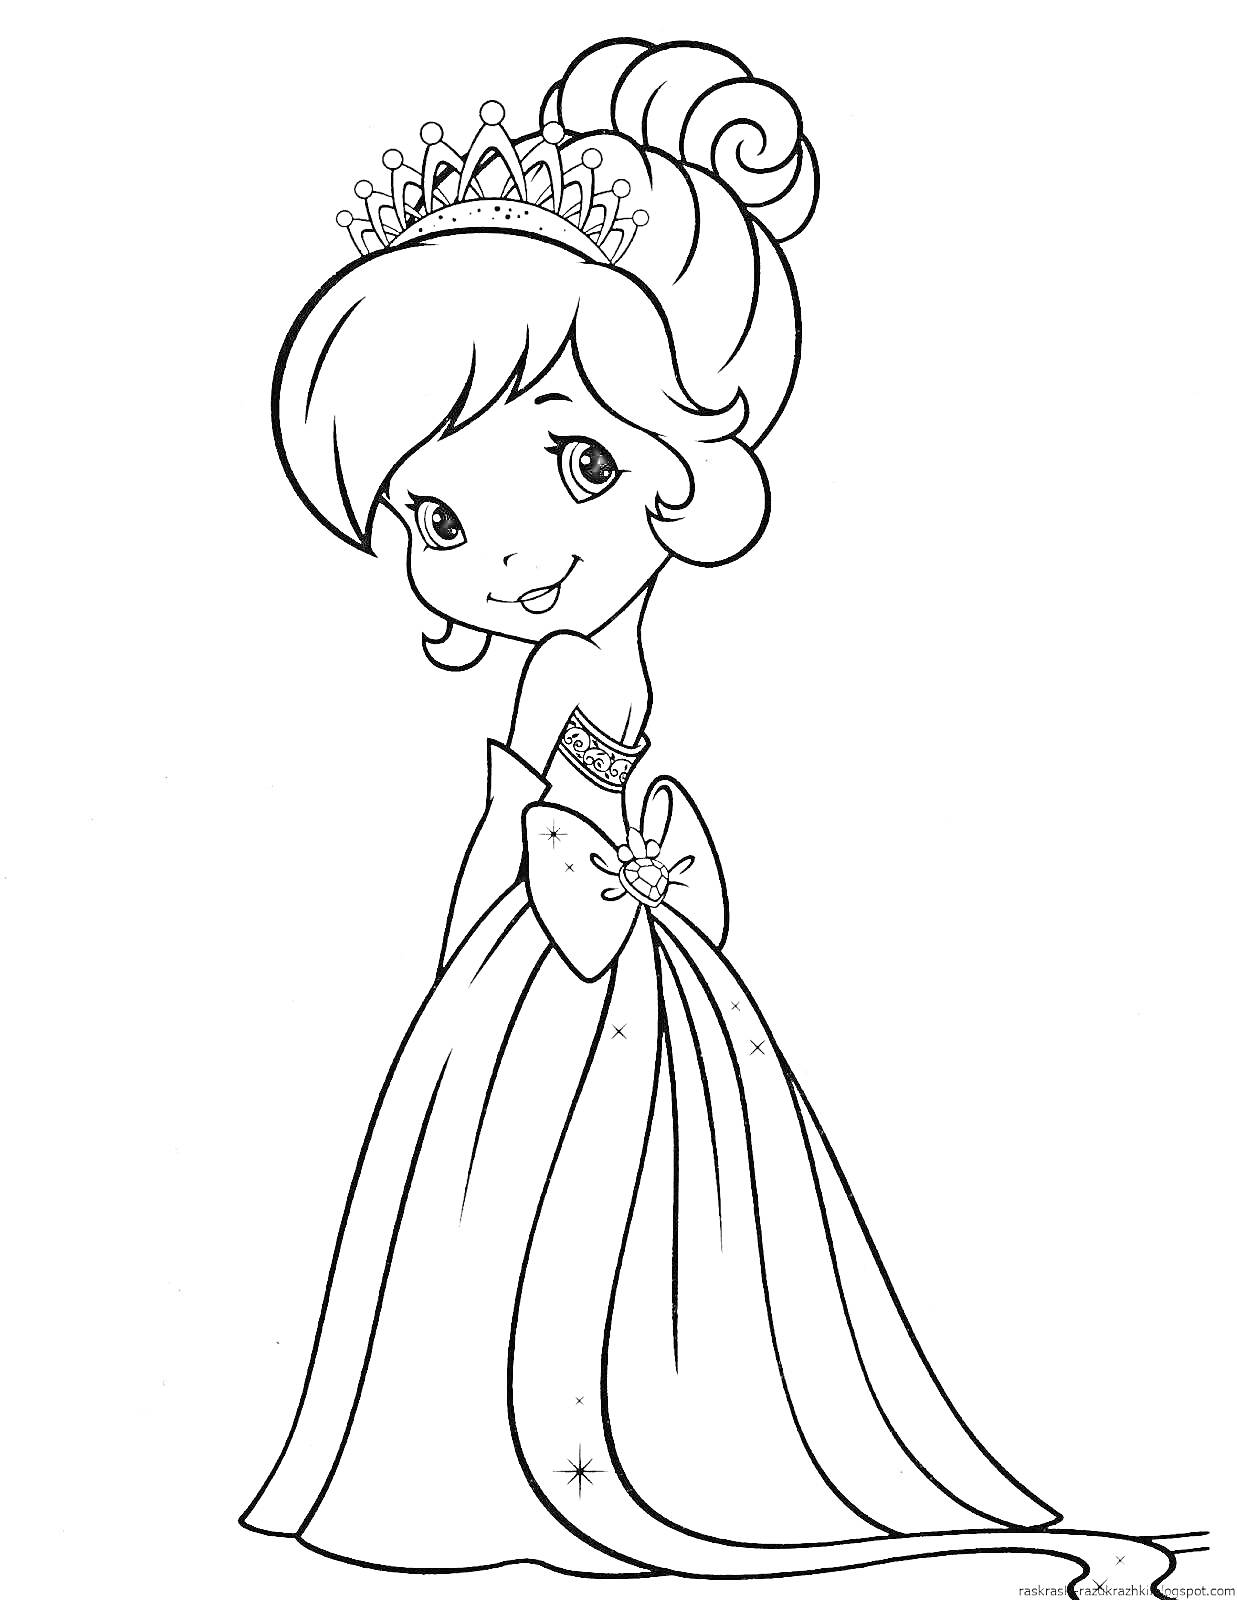 Раскраска Принцесса с тиарой. Девочка с прической в виде пучка, тиарой, длинным платьем с бантом и украшениями.